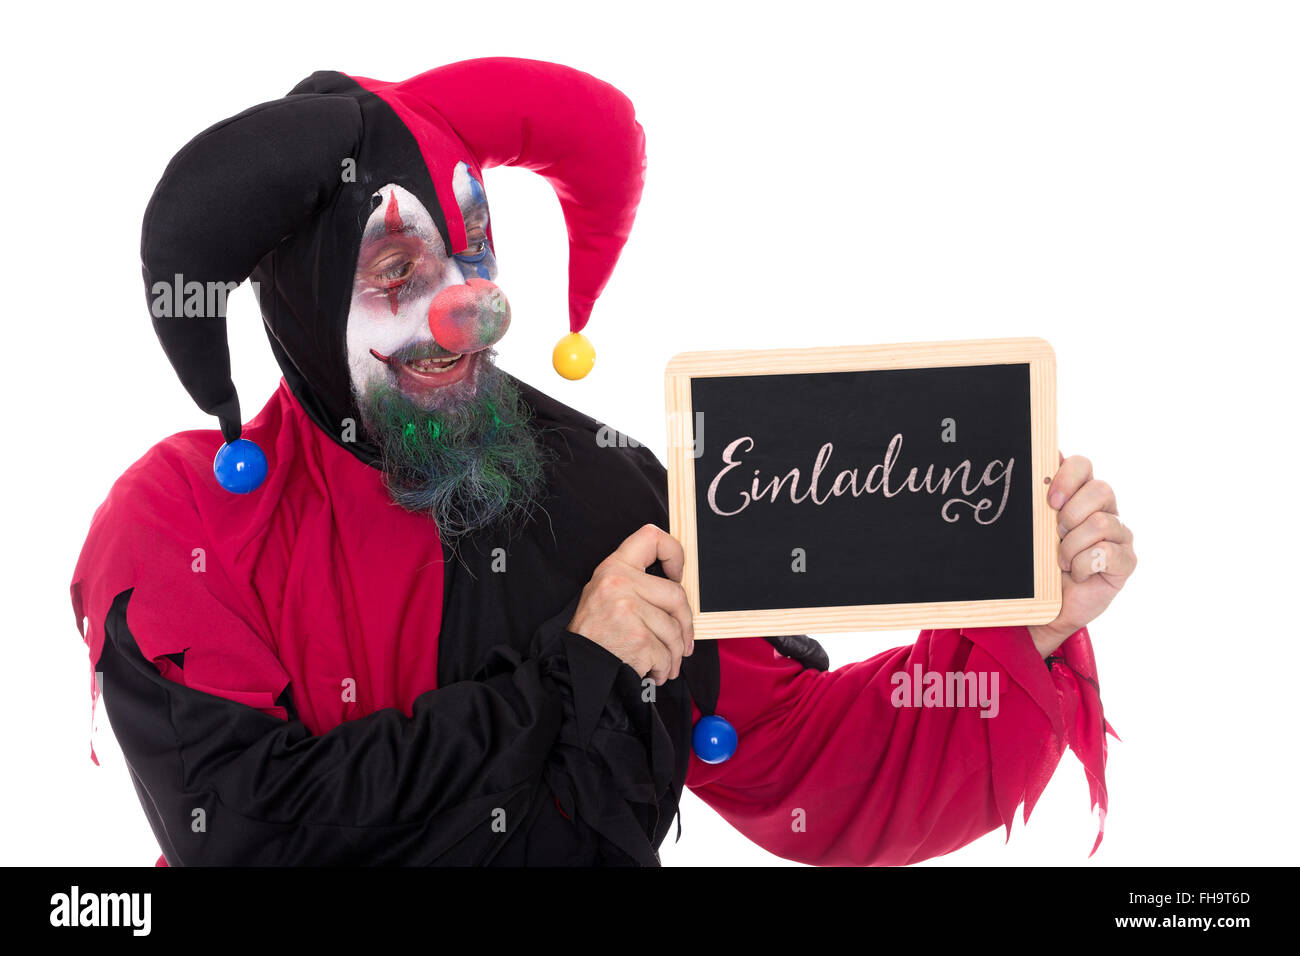 Funny clown tenant une ardoise avec mot allemand pour une invitation, isolated on white Banque D'Images